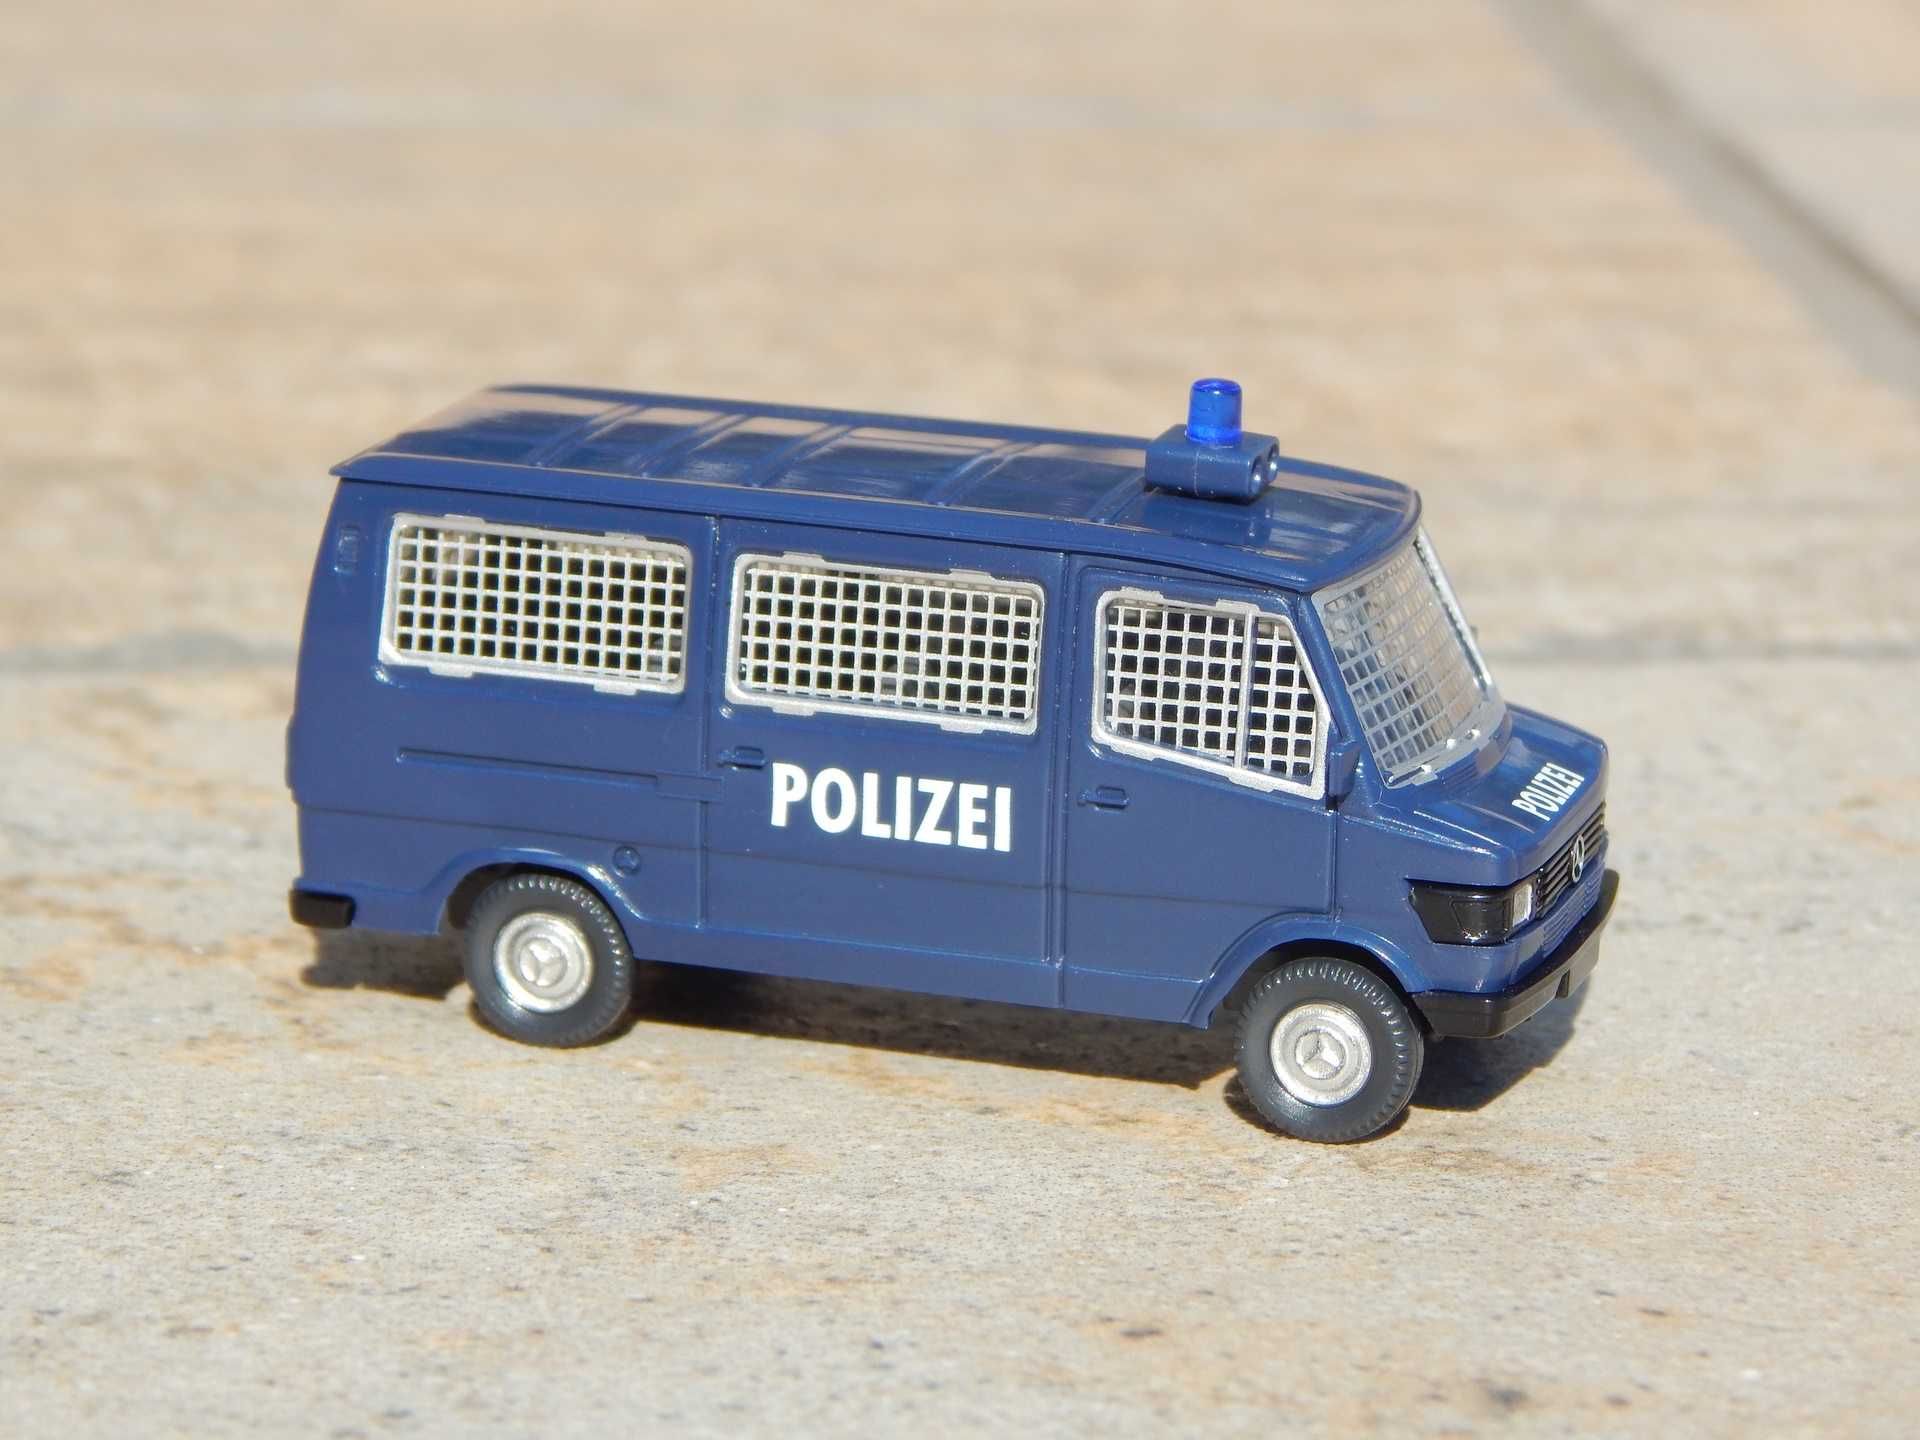 Macheta duba politie jandarmerie Mercedes 280-282 Wiking 1:87 la cutie